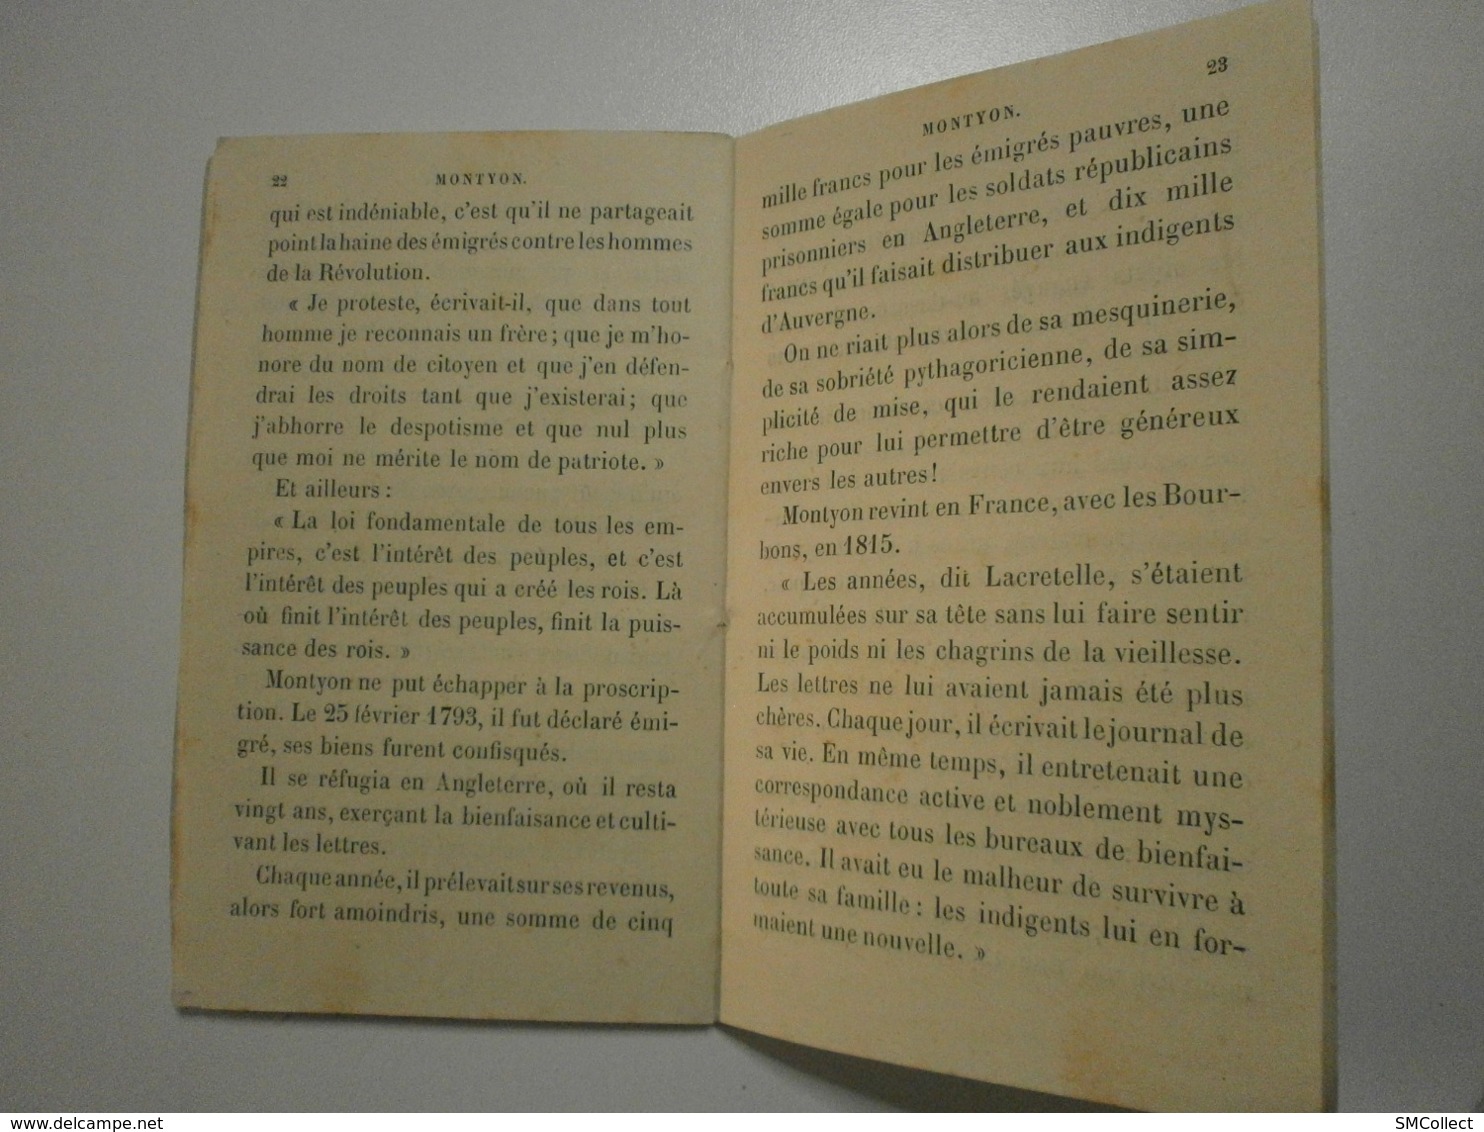 Editions Hachette 1884. Bibliothèque des écoles et des familles. Montyon, par Mme Gustave Demoulin (8047)